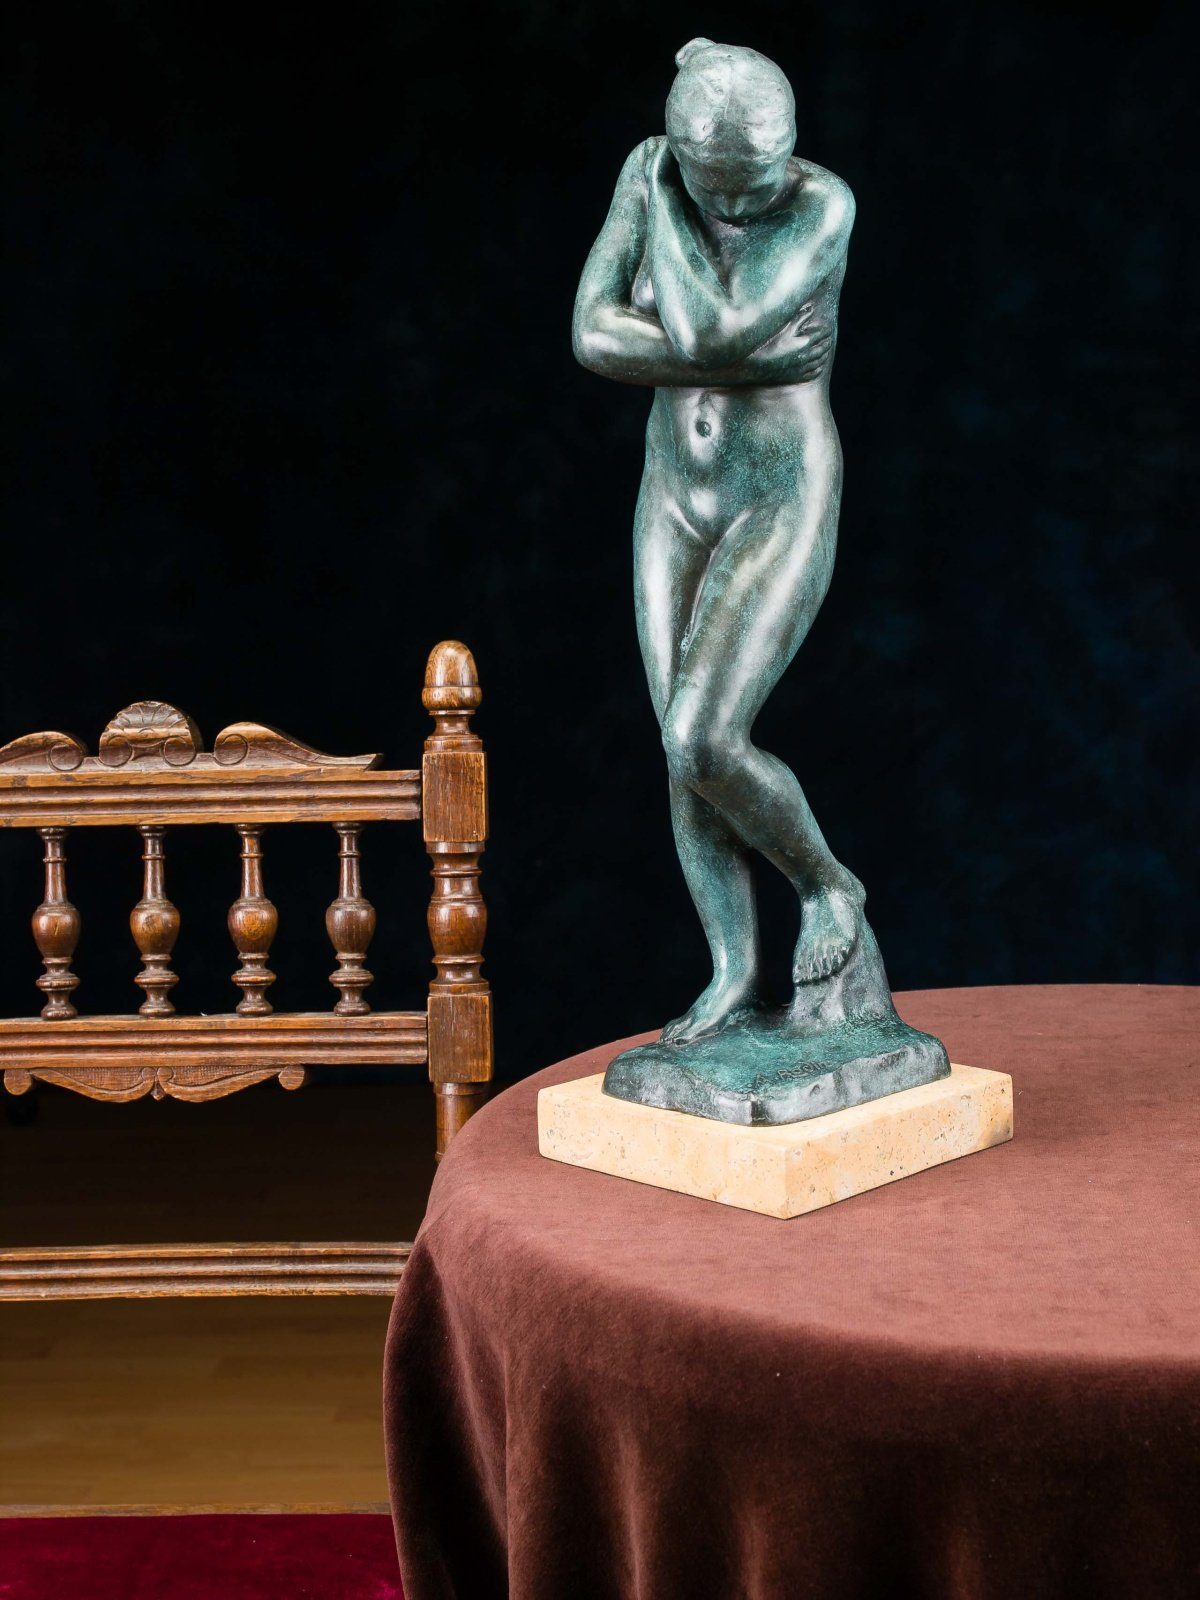 Antik-St Kopie nach Figur Eva Replik Figur Rodin Bronzeskulptur Skulptur Bronze Aubaho